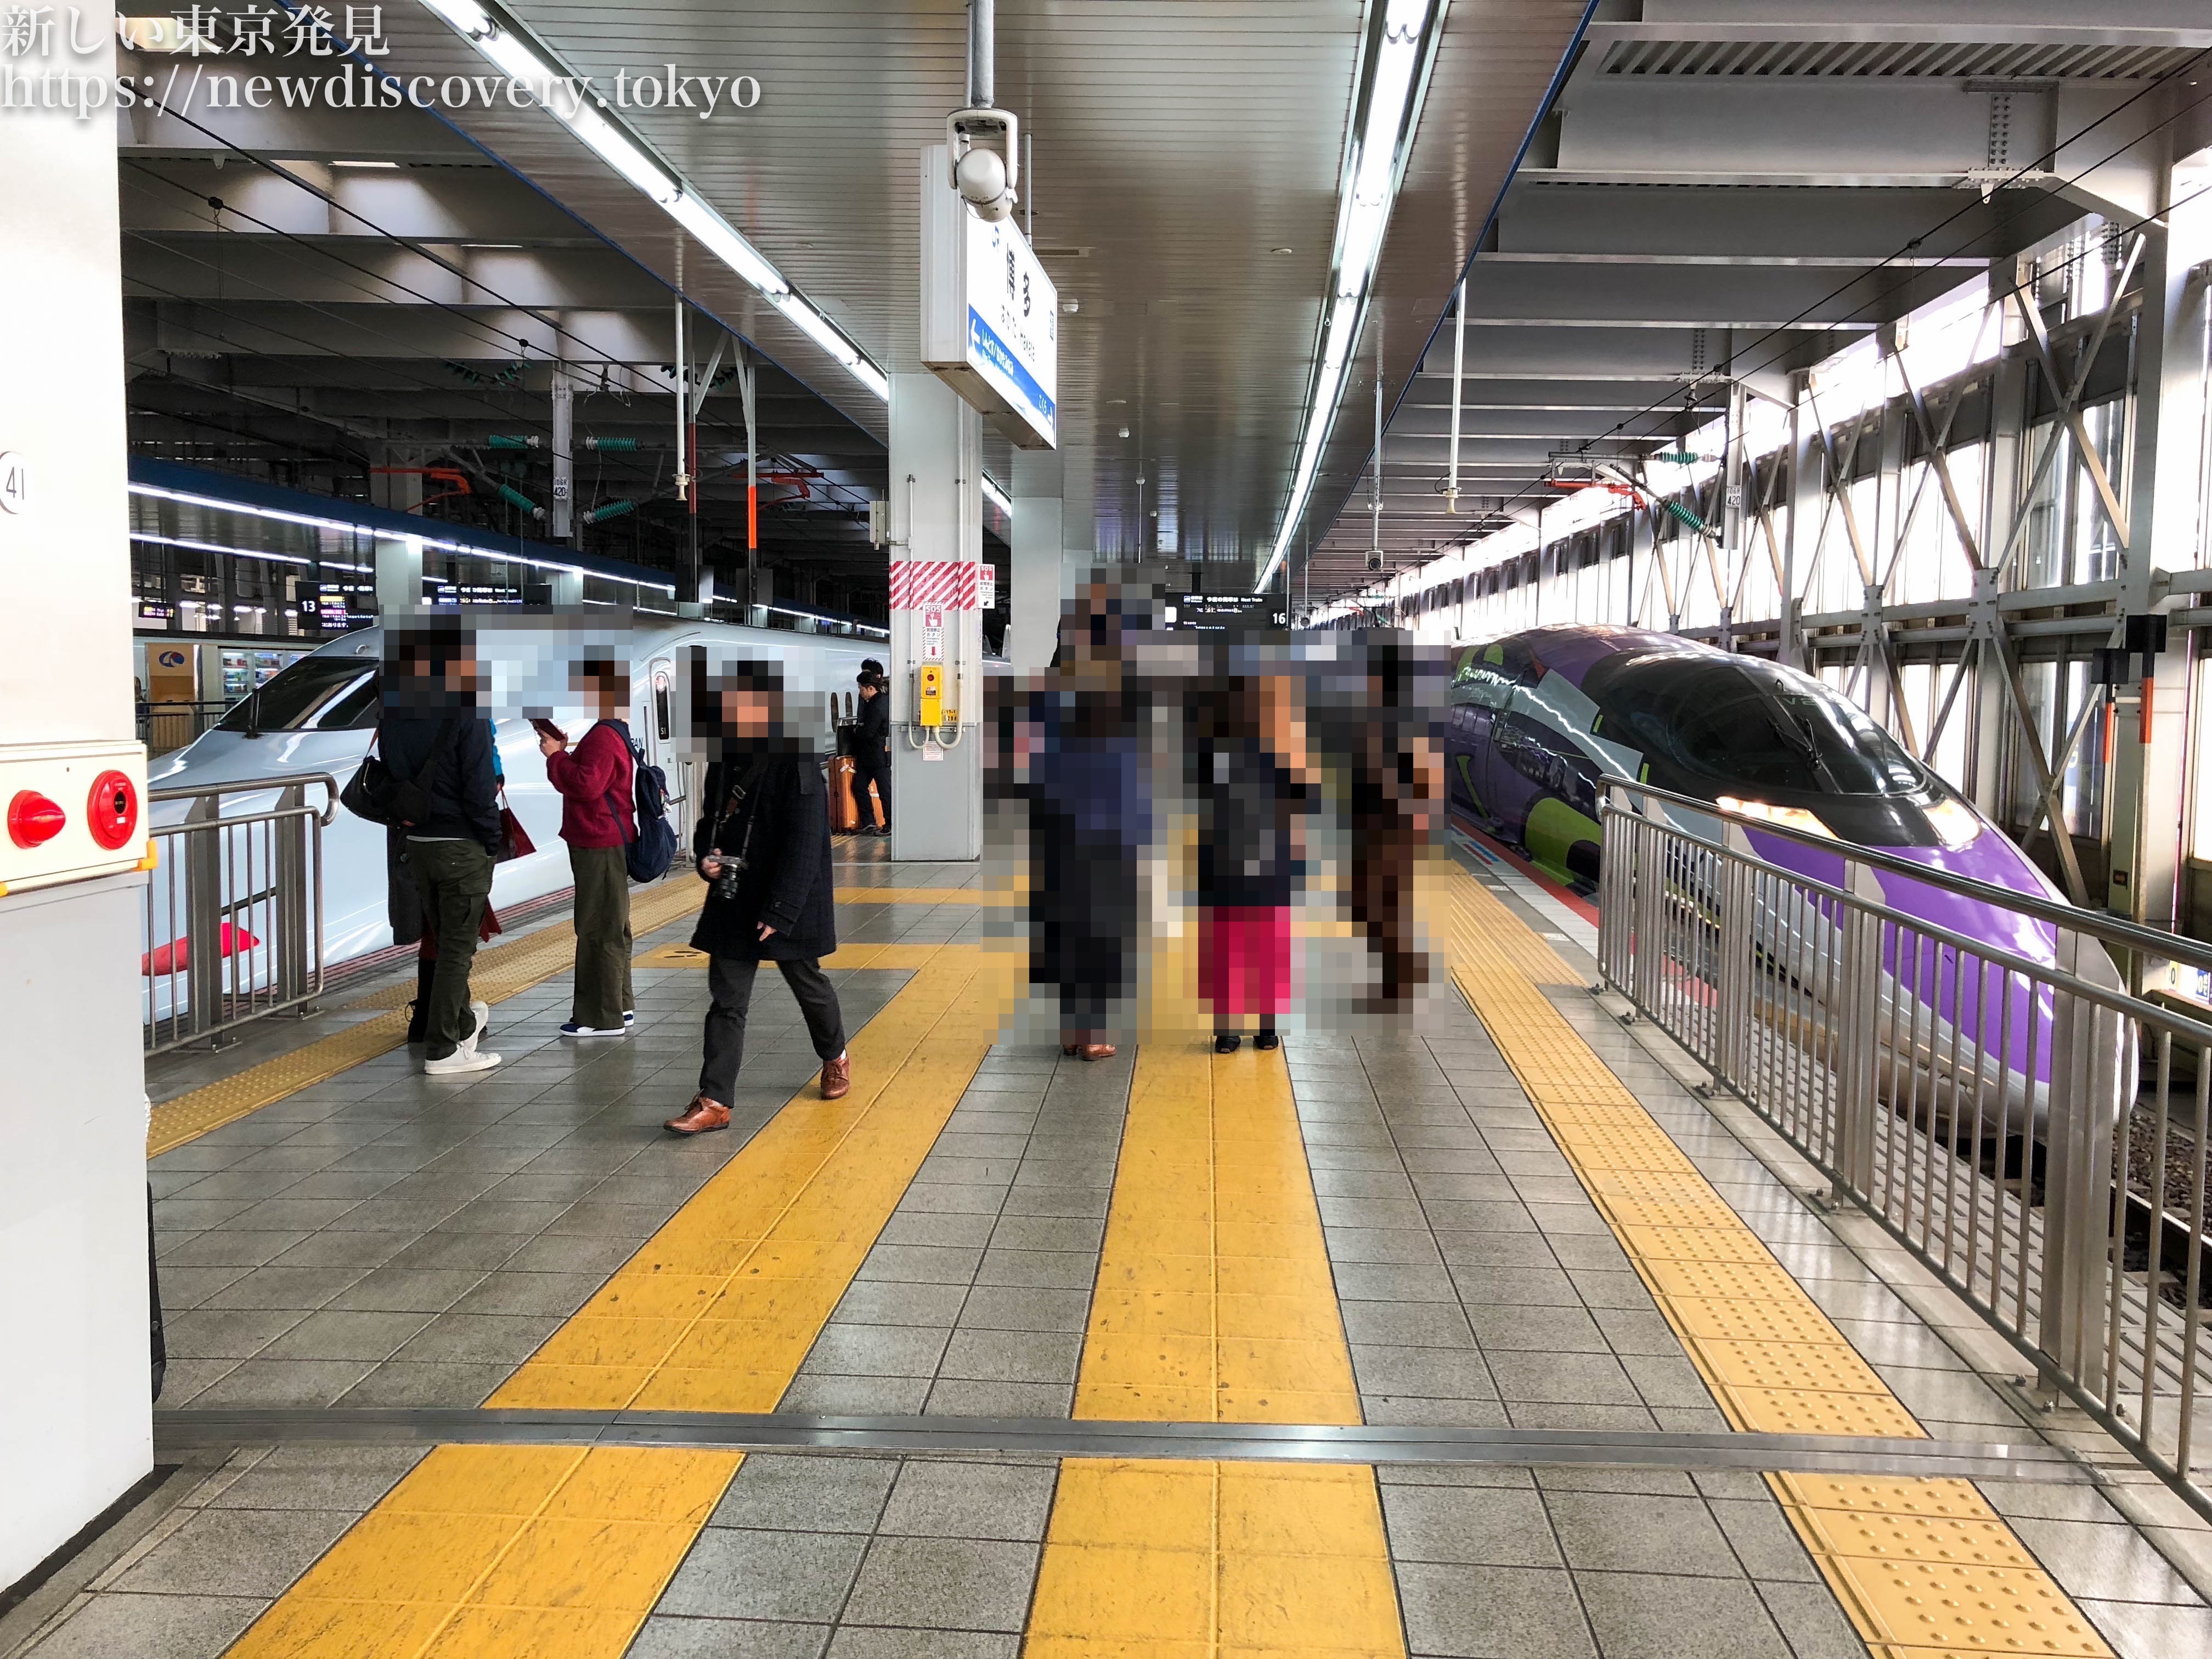 福岡市 博多駅周辺 で 電車好きな子供を連れて行くべき子鉄スポット トレインビュー 7選をご紹介 子連れパパママを応援する情報チャンネル 新しい東京発見